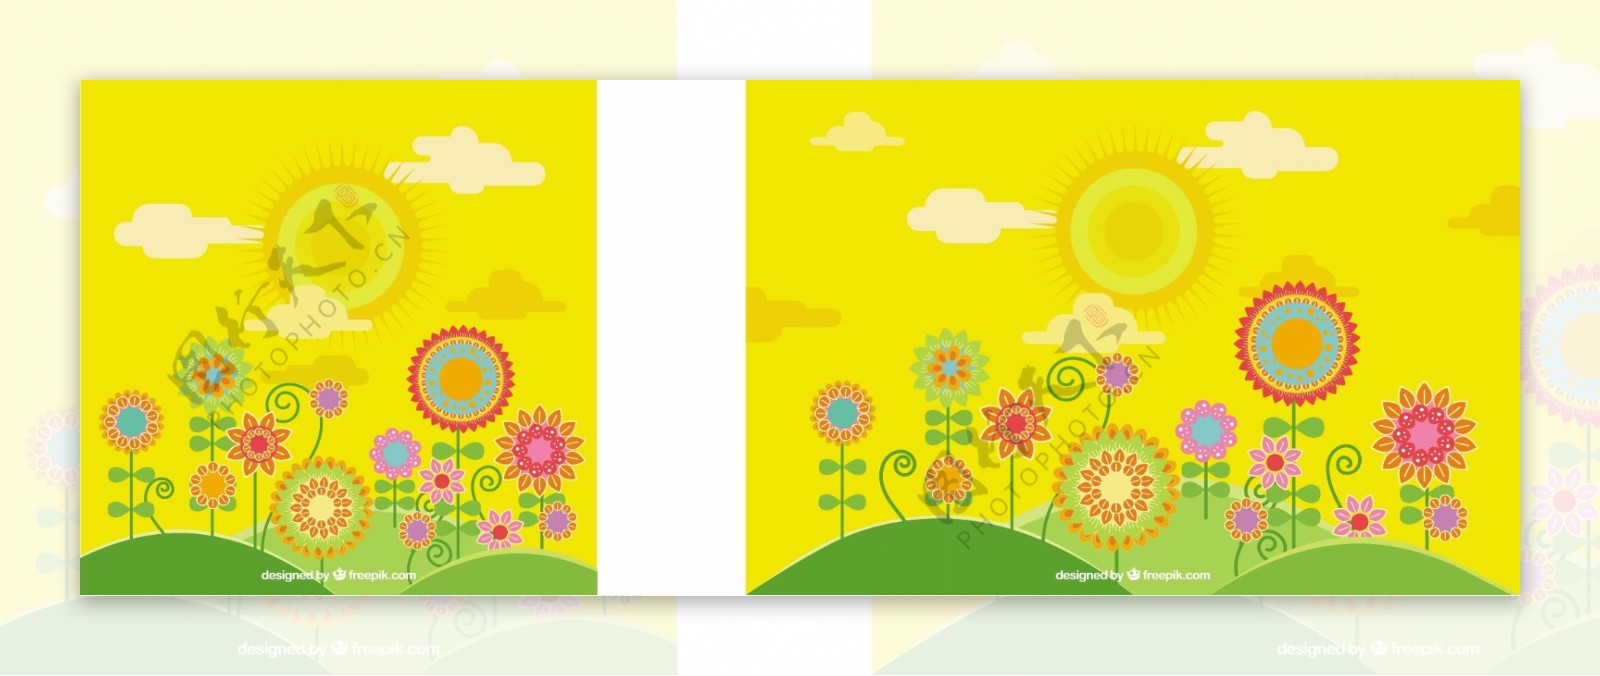 黄色的春天背景与花卉在平面设计